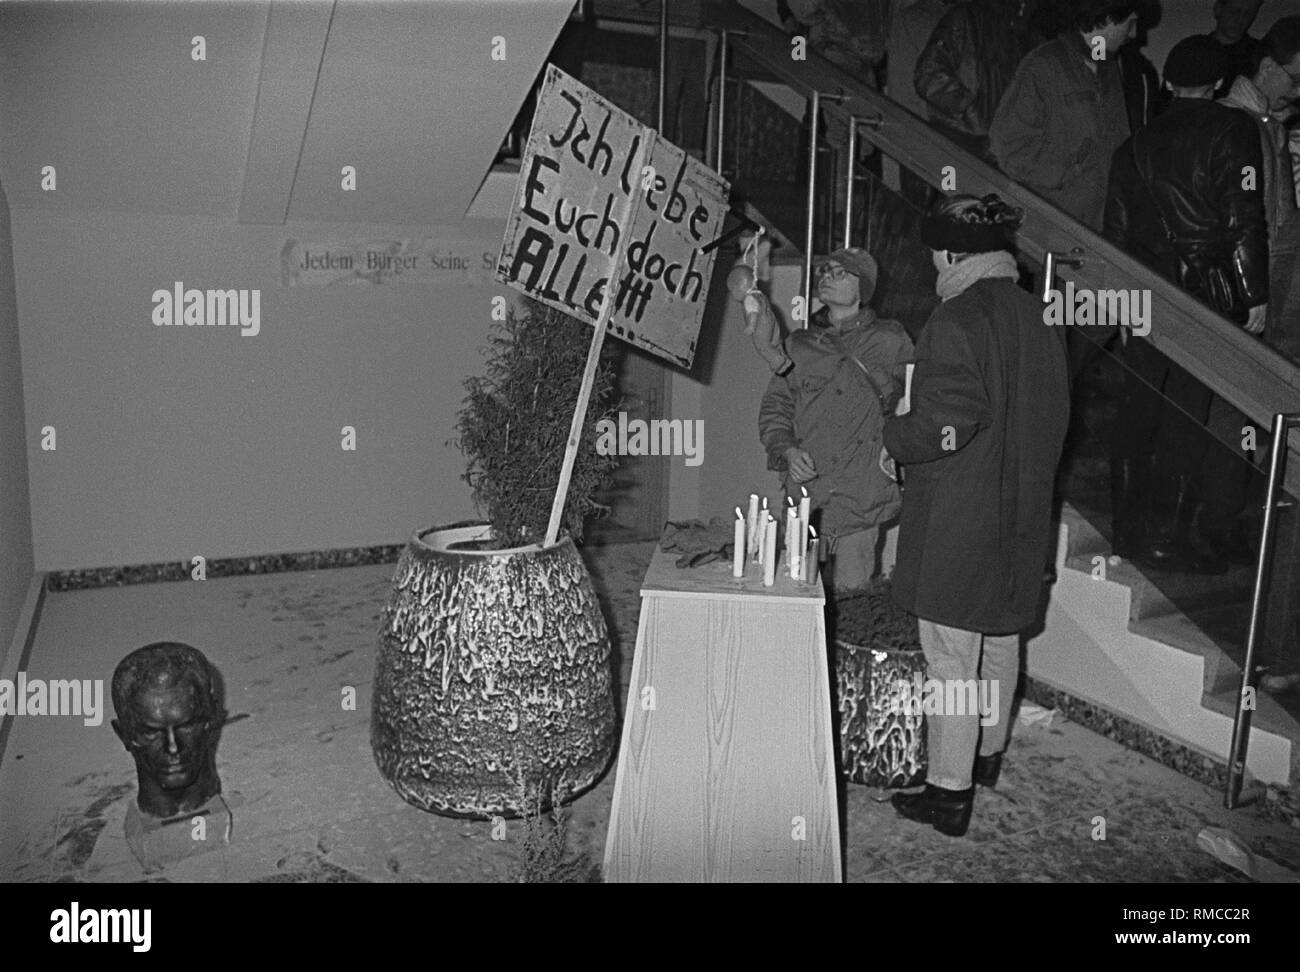 Deutschland, Berlin, den 15. Januar 1990: Besetzung der Stasi-zentrale in der Normannenstraße. Auf den Banner (englische Übersetzung): "Ich Liebe Sie Alle", Ministerium für Staatssicherheit, MfS, Stasi. Stockfoto